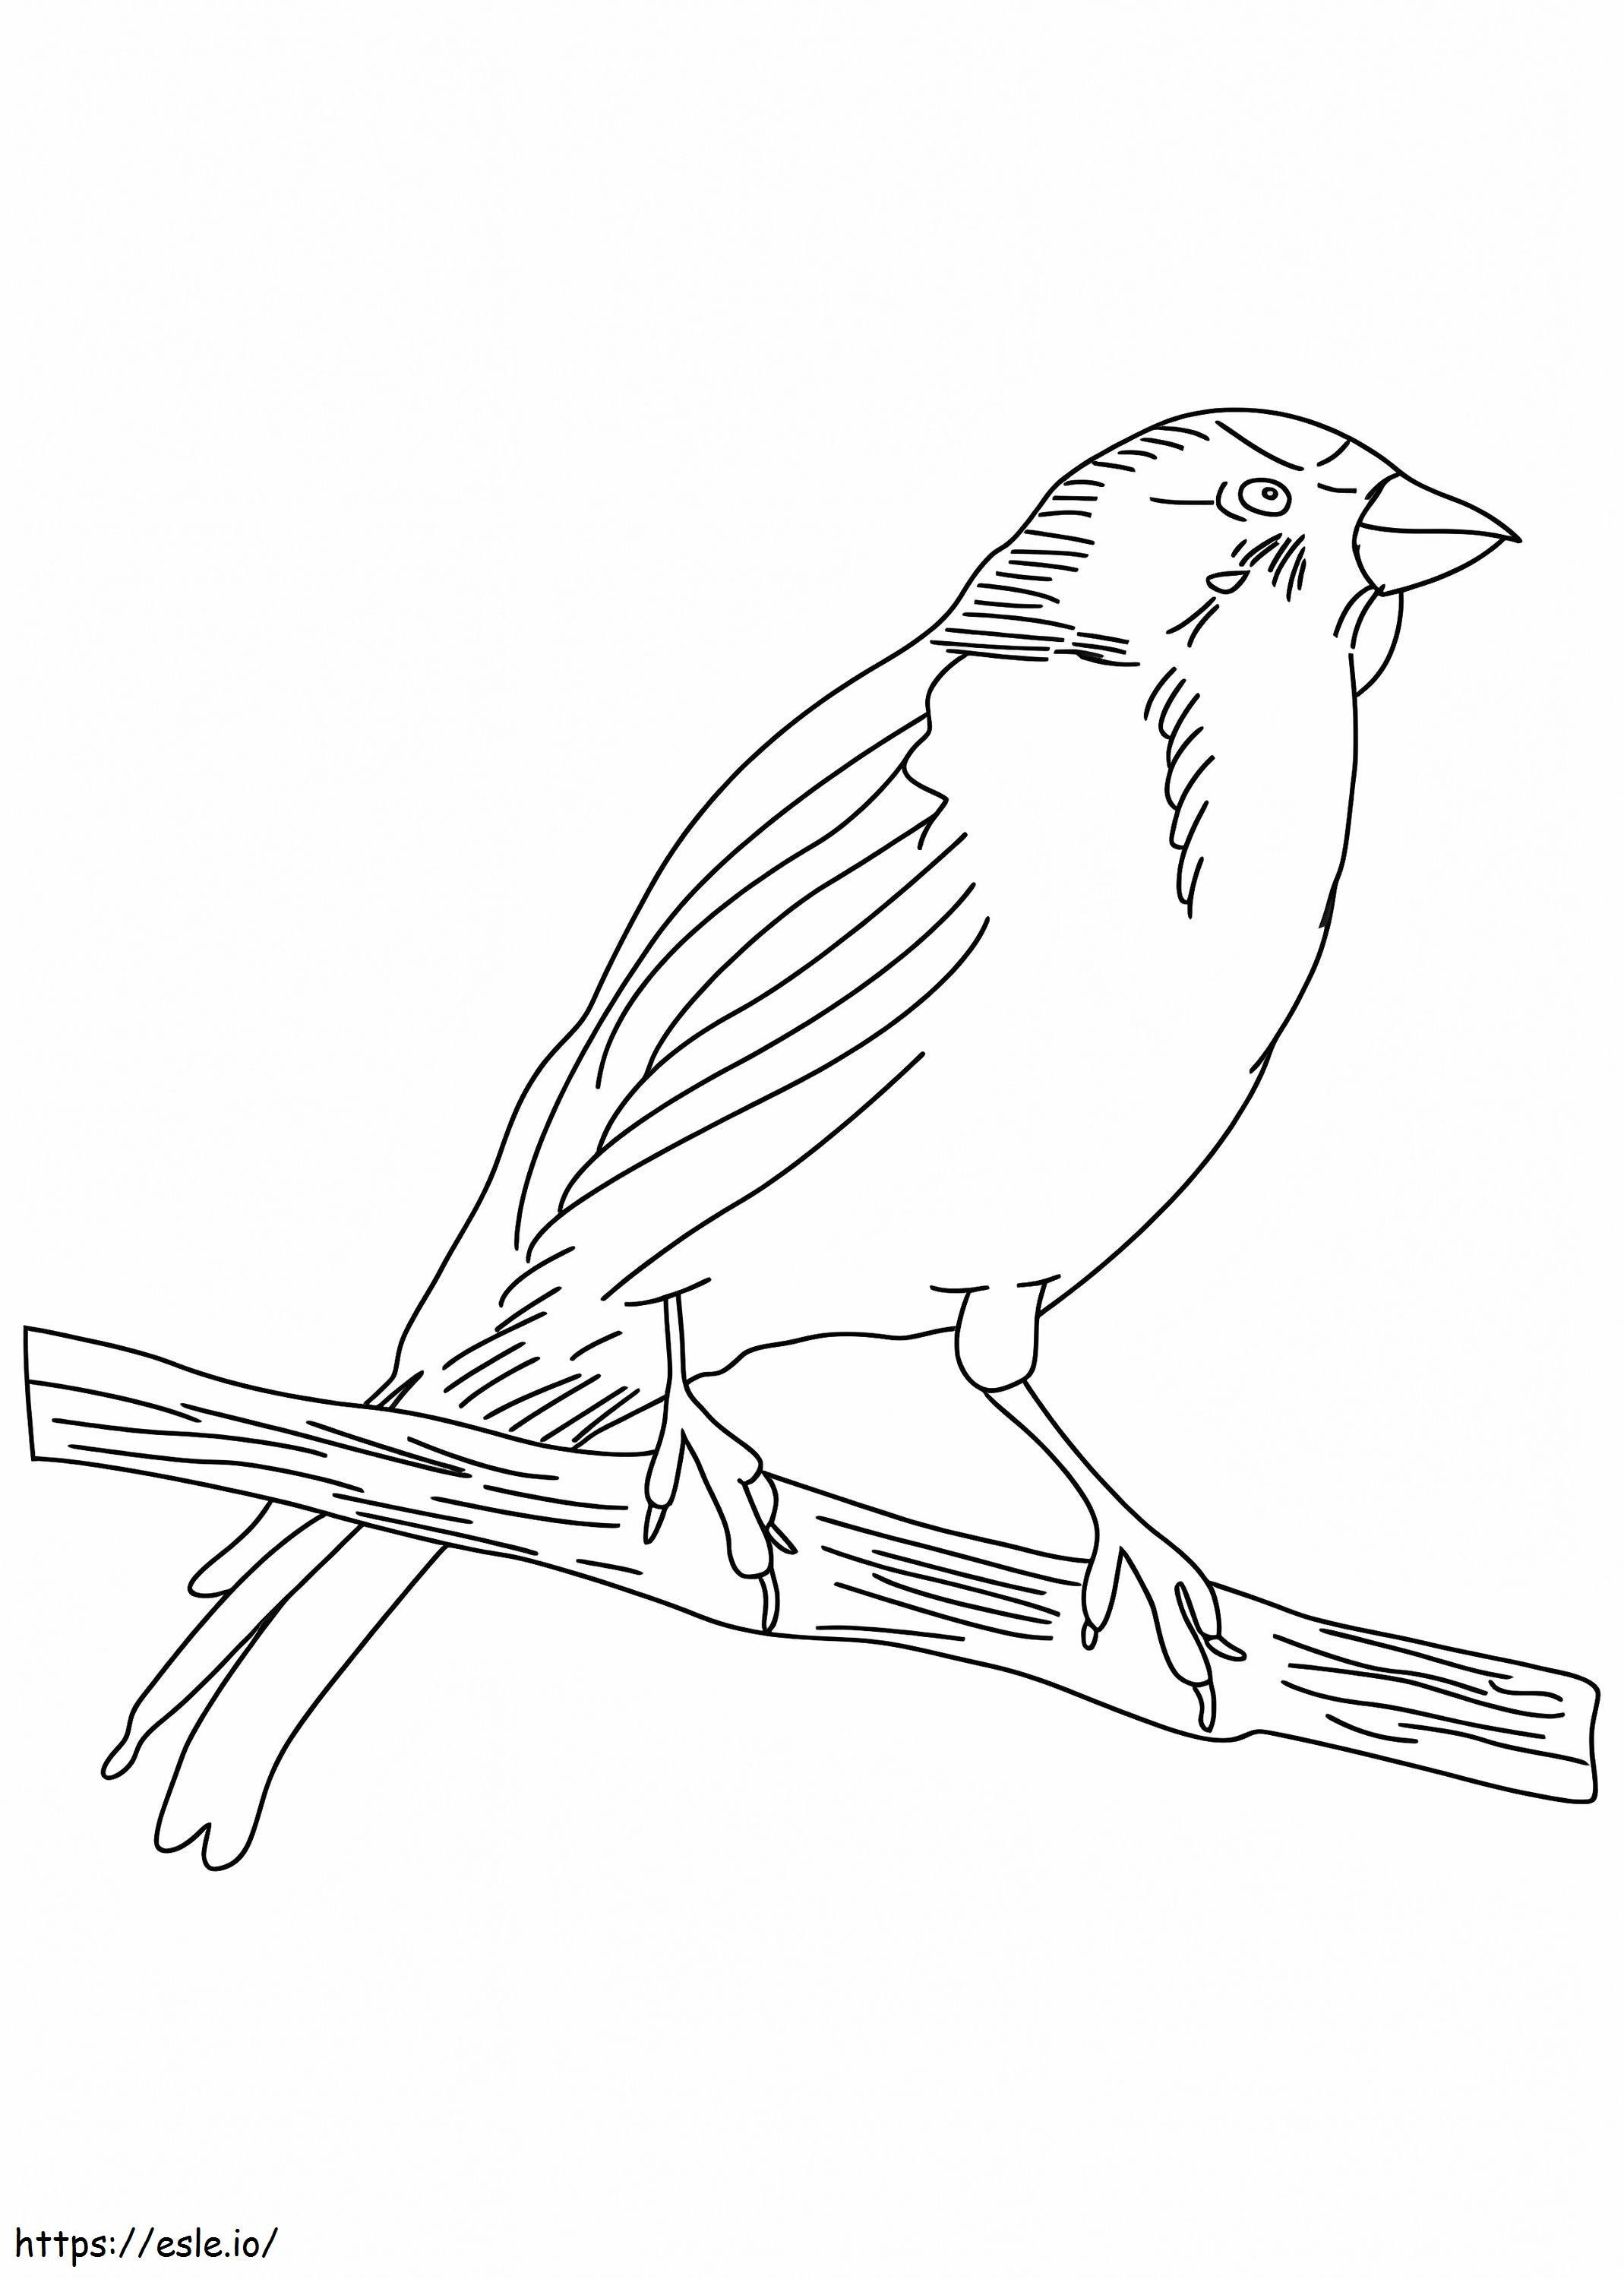 Kanarienvogel mit Bleistift zeichnen ausmalbilder